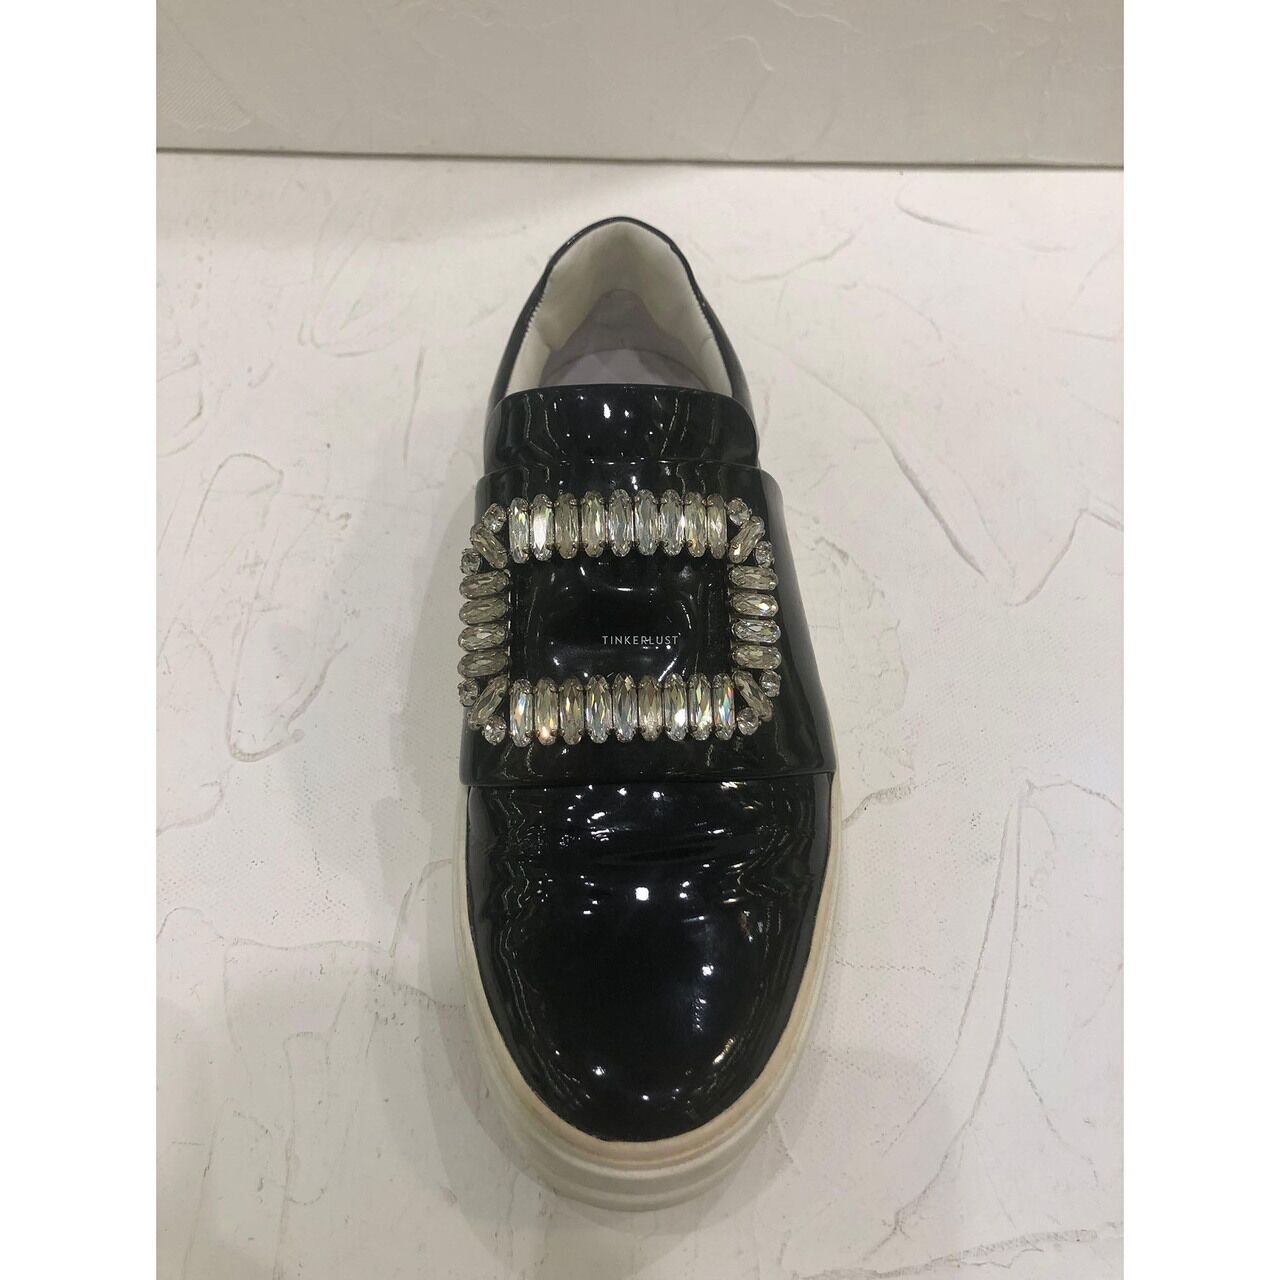 Roger Vivier Crystal Embellished Black Patent Leather Slip-On Sneakers